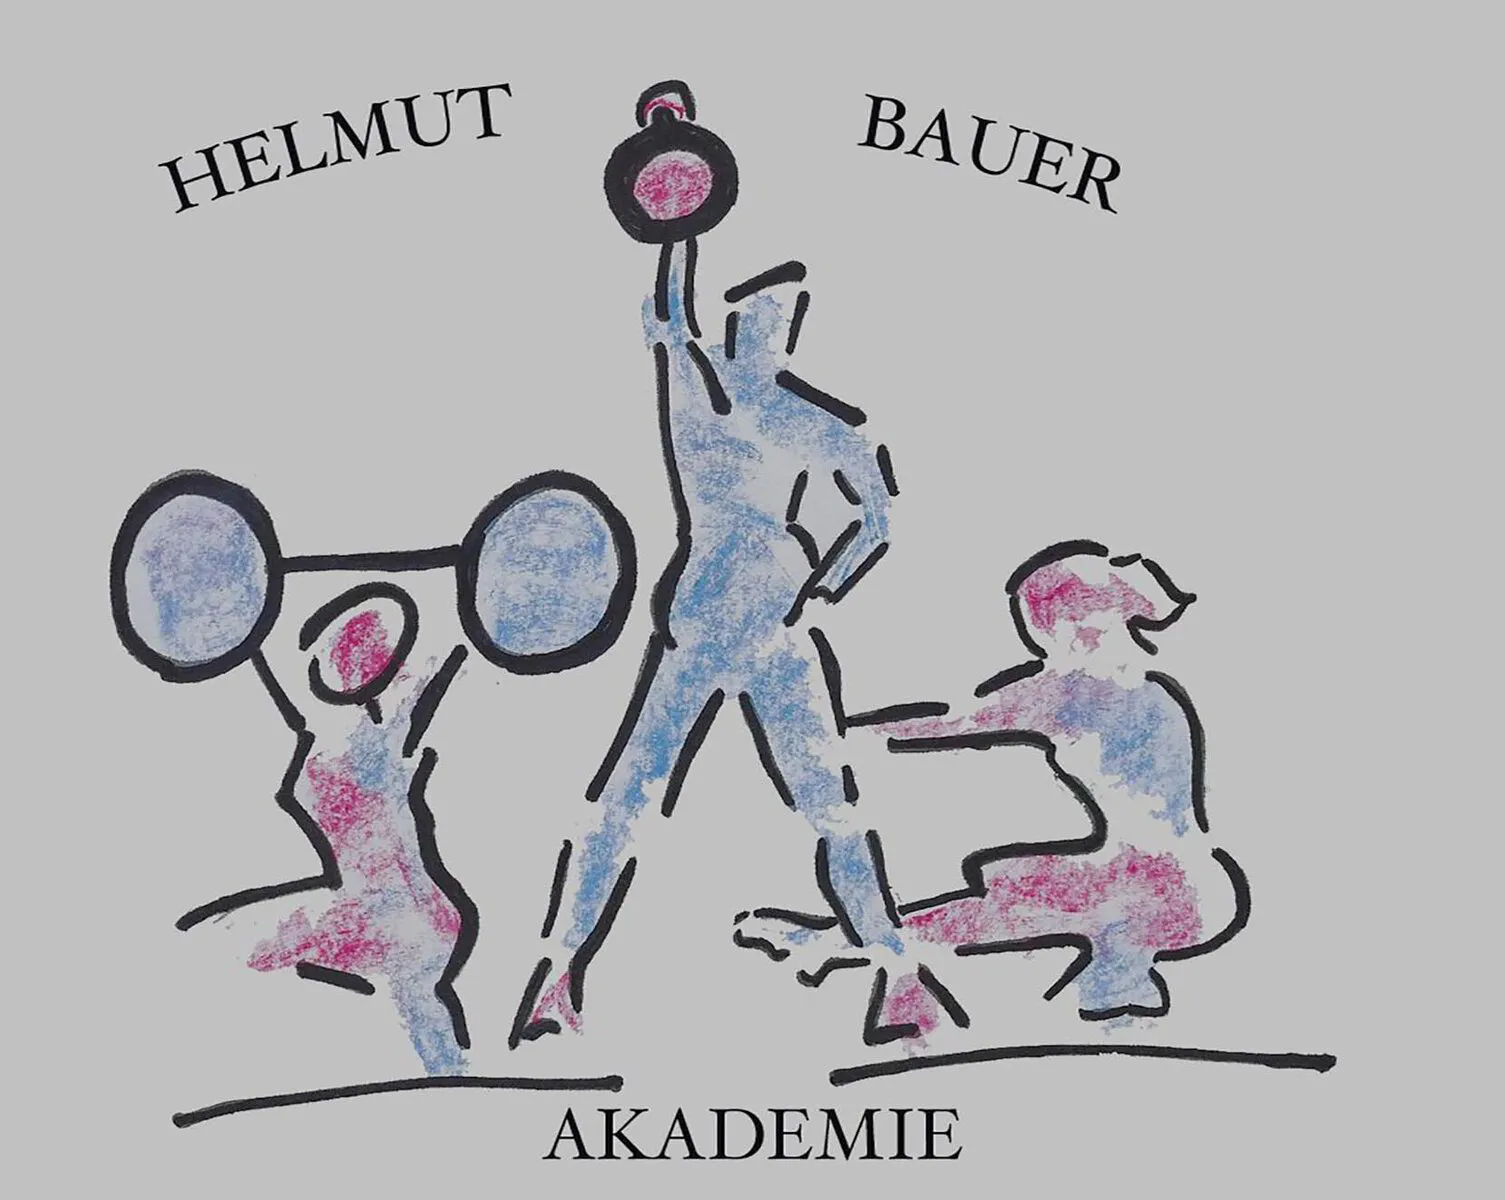 Helmut Bauer Akademie